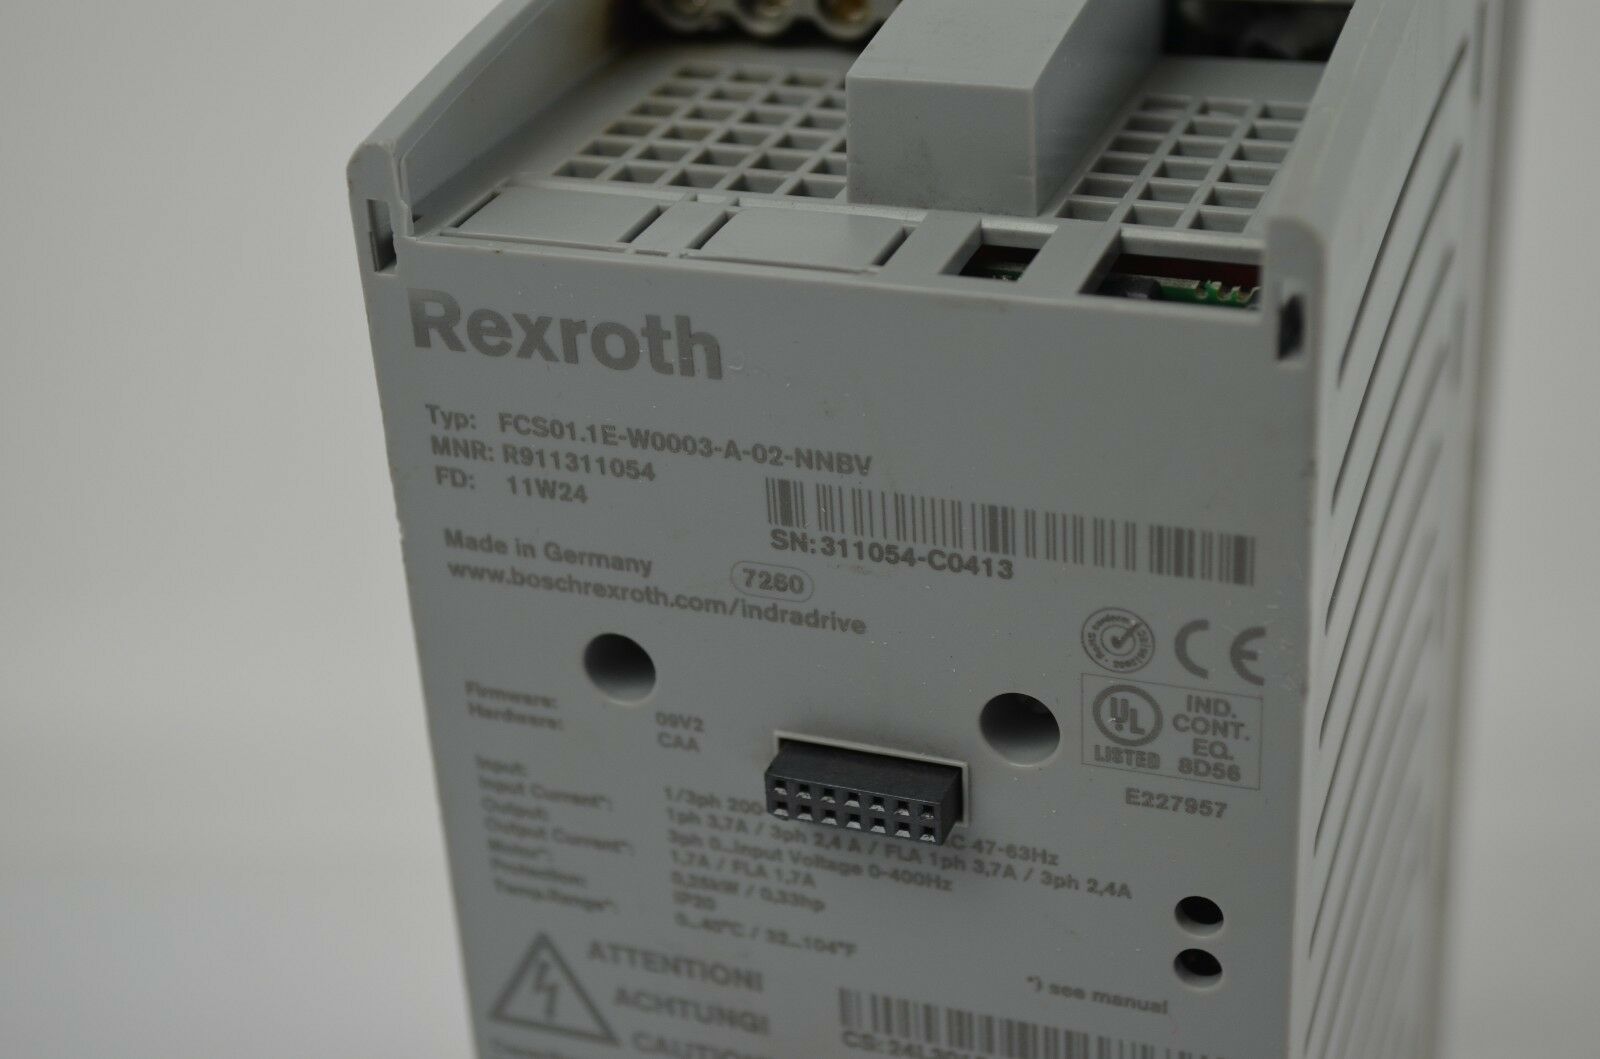 Rexroth FCS01.1E-W0003-A-02-NNBV